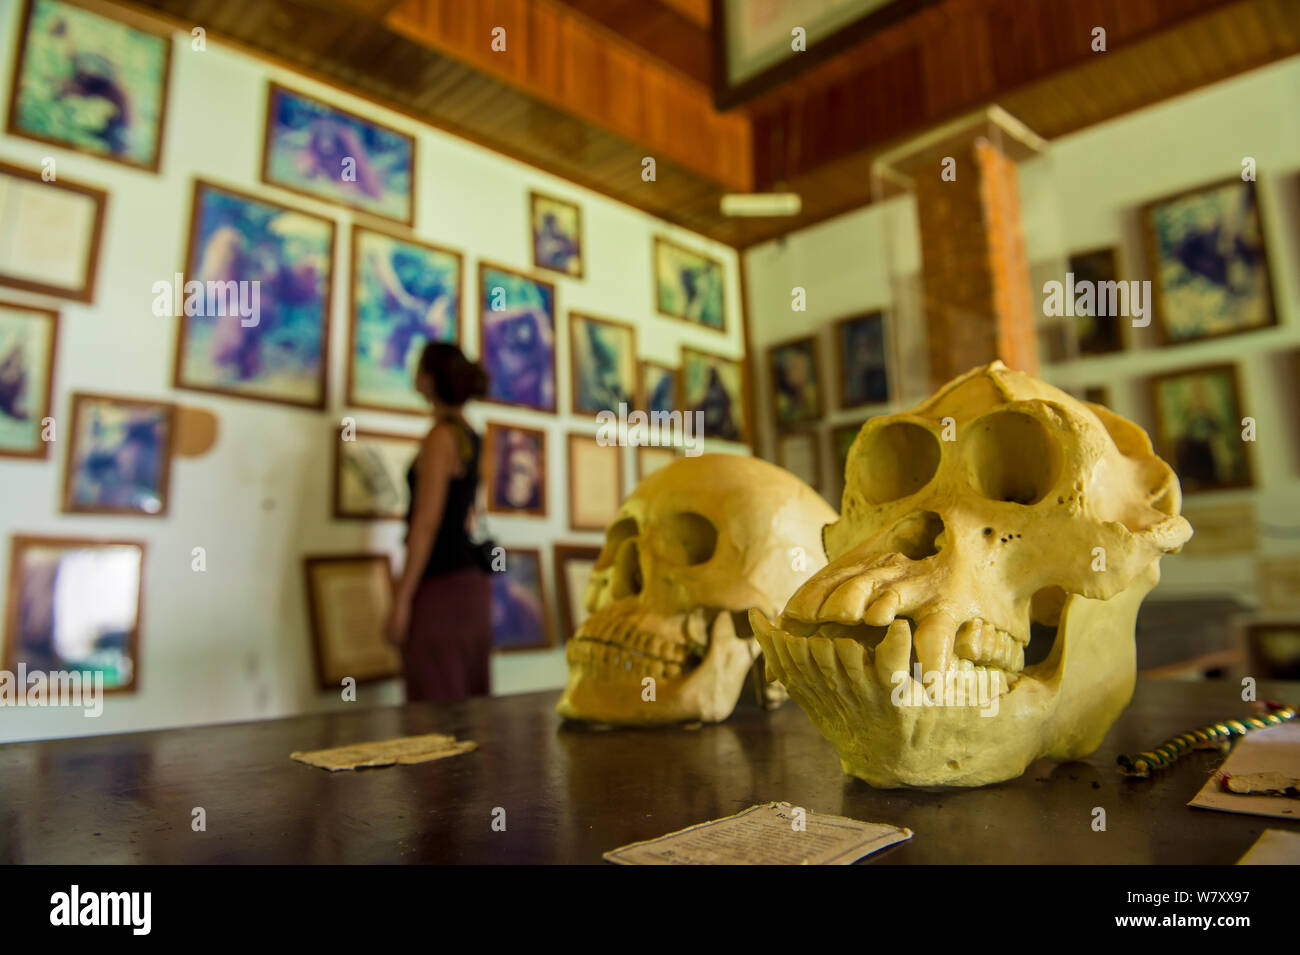 Camp Leakey Information Center, mit Orang-utan (Pongo pygmaeus) und einen menschlichen Schädel nebeneinander, Tanjung Puting Nationalpark, Borneo-Kalimatan, Indonesien. Stockfoto